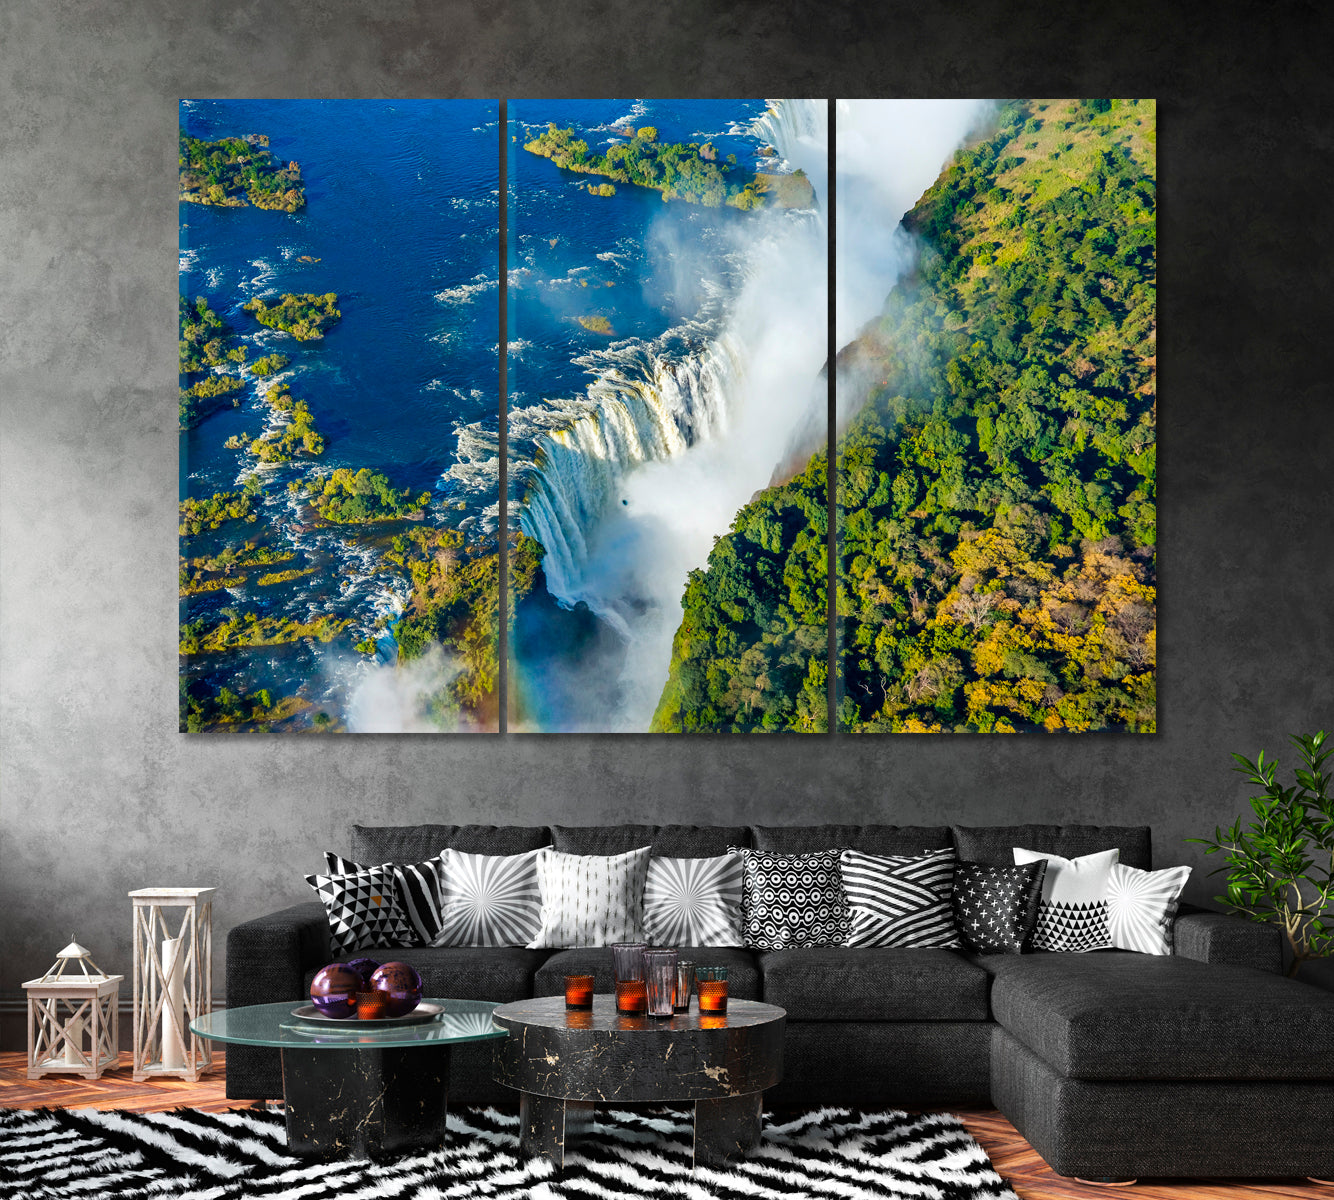 Victoria Falls Waterfall on Zambezi River Canvas Print ArtLexy 3 Panels 36"x24" inches 